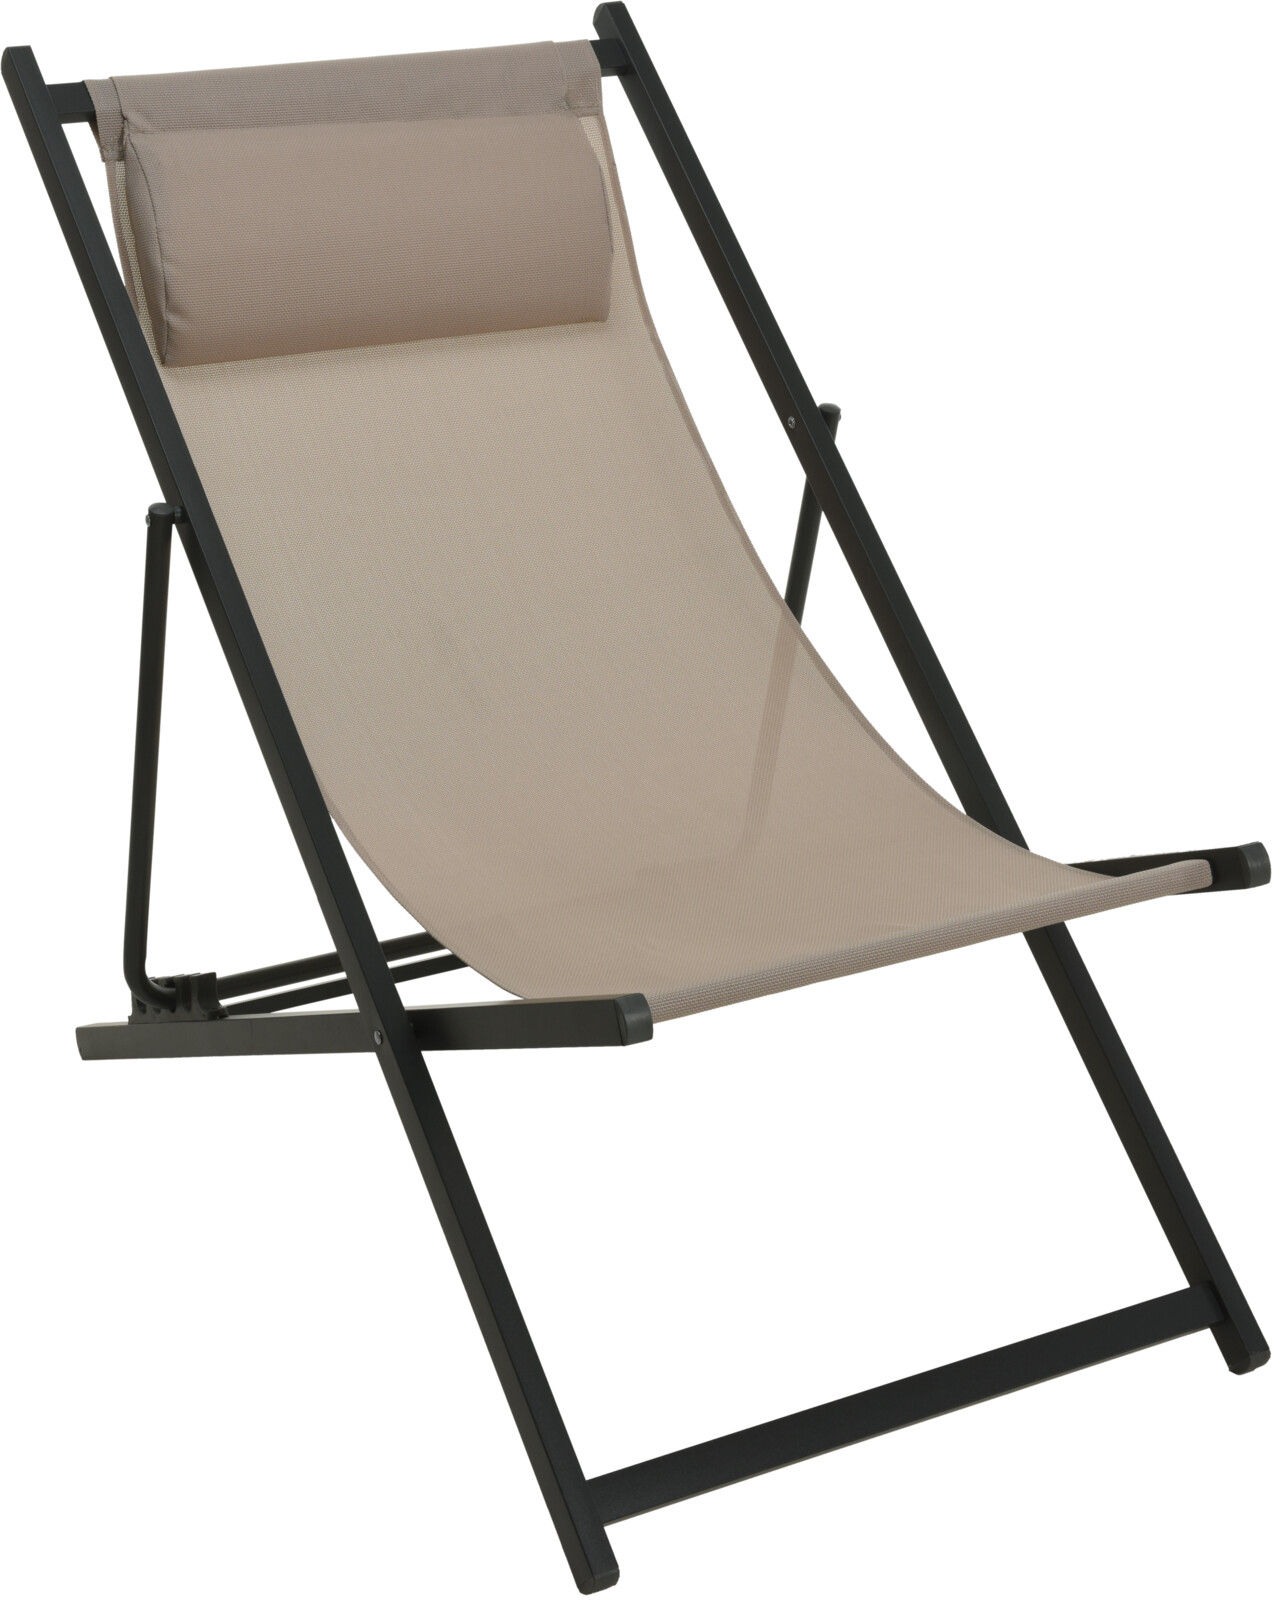 Metall Liegestuhl mit Kopfkissen - 100 cm / grau-beige - Klappbarer Garten Stuhl